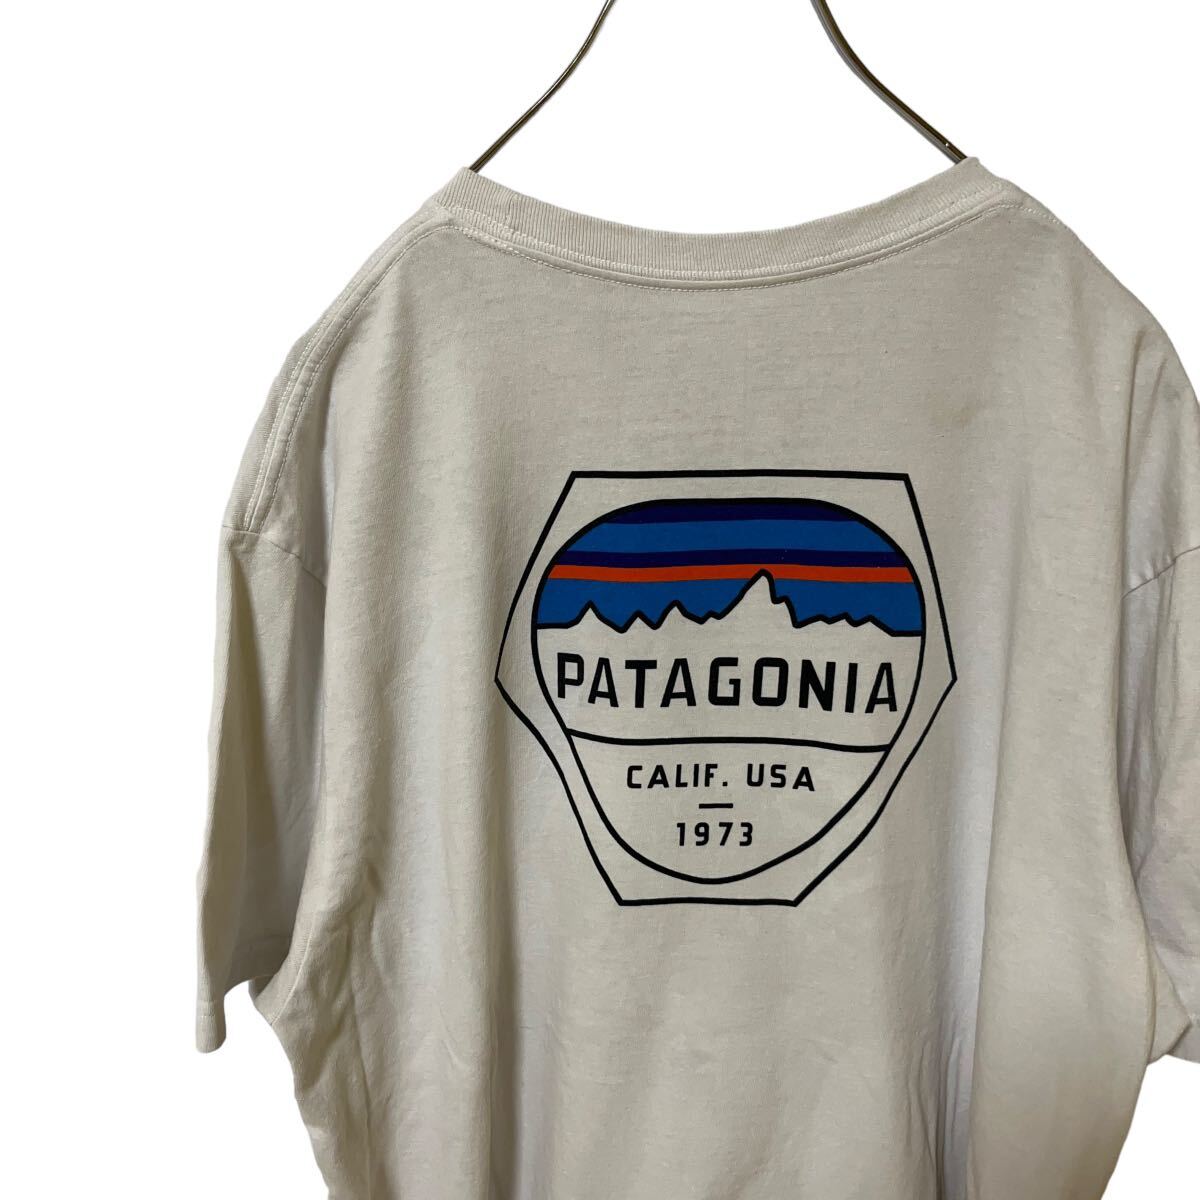 10 パタゴニア L アメリカ古着 メキシコ製 バックプリント リサイクルコットン ポリ混 半袖 Tシャツ ホワイト  patagonia メンズの画像1